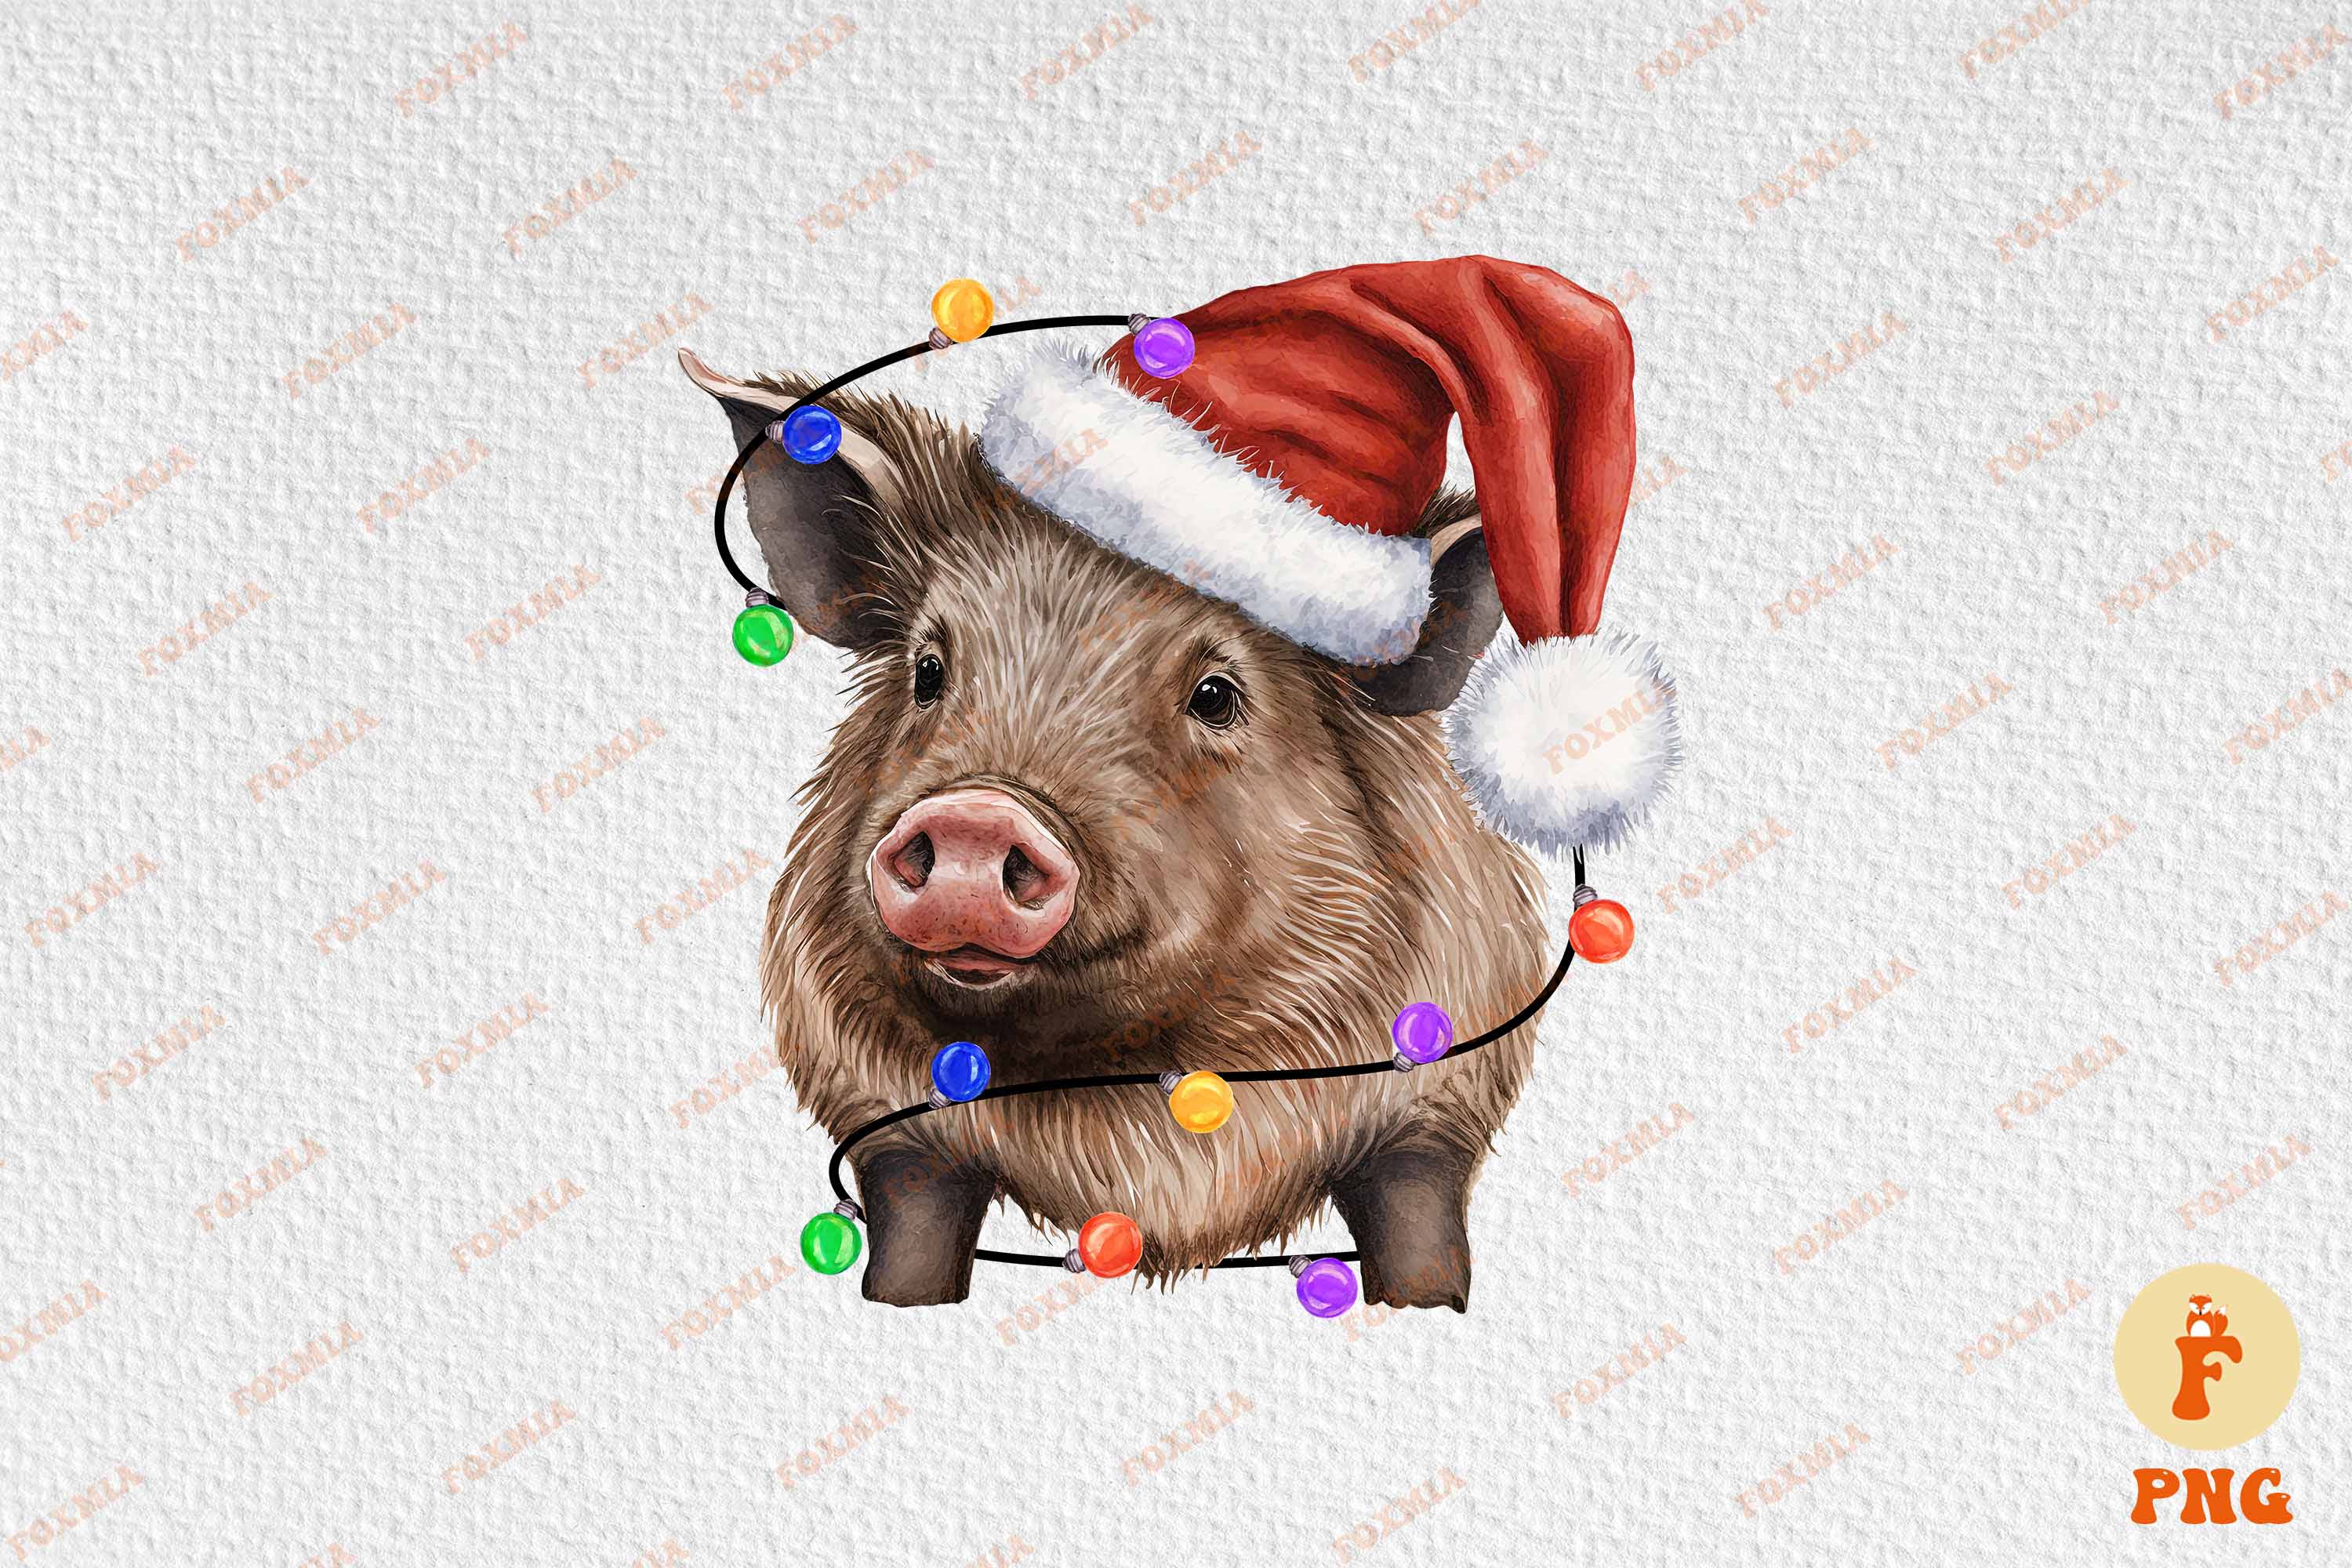 Unique image of a wild boar in a santa hat.